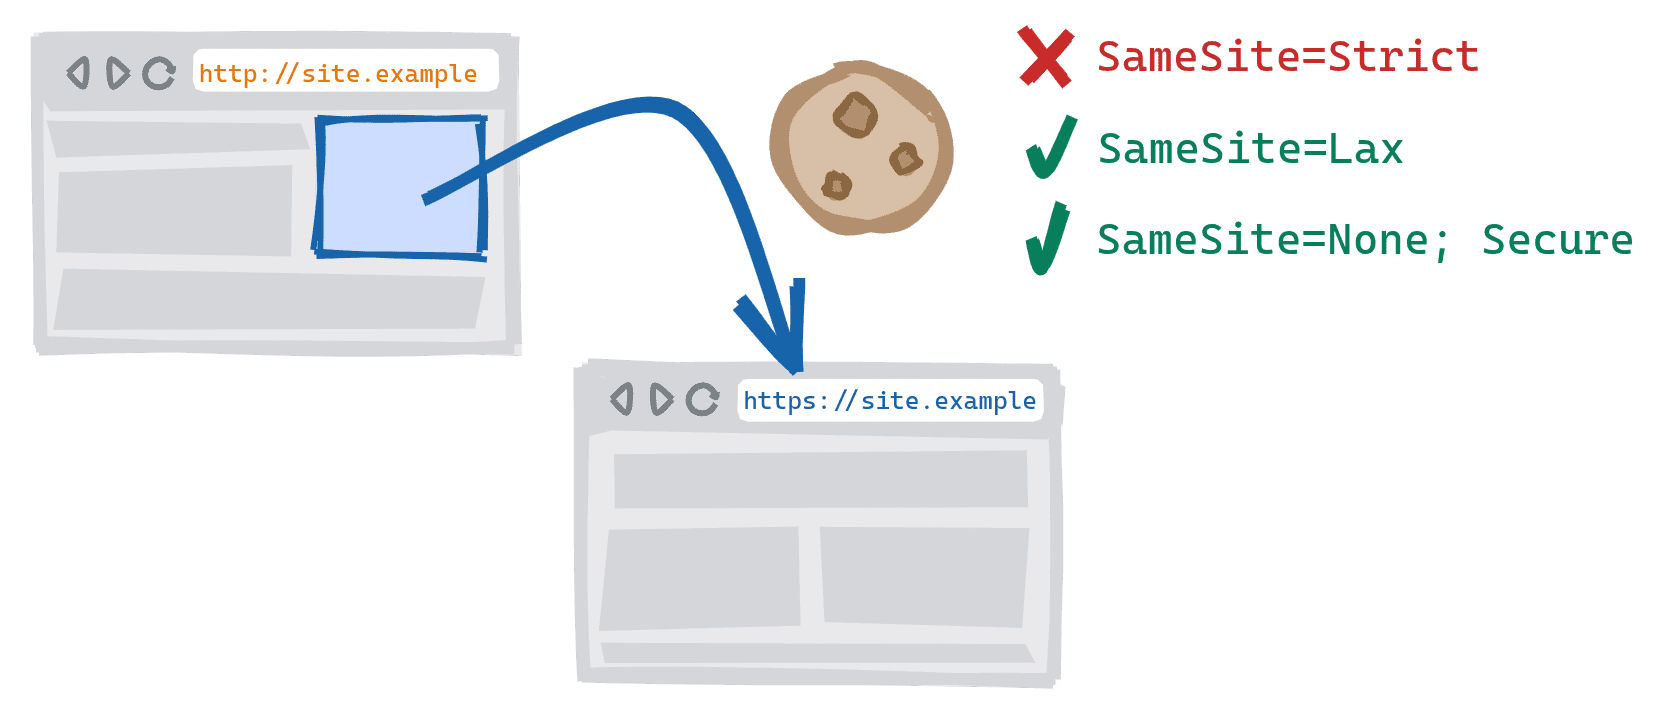 Navigasi lintas skema yang dipicu dengan mengikuti link di versi HTTP situs yang tidak aman ke versi HTTPS yang aman. Cookie SameSite=Strict diblokir, SameSite=Lax dan SameSite=None; Cookie aman diizinkan.